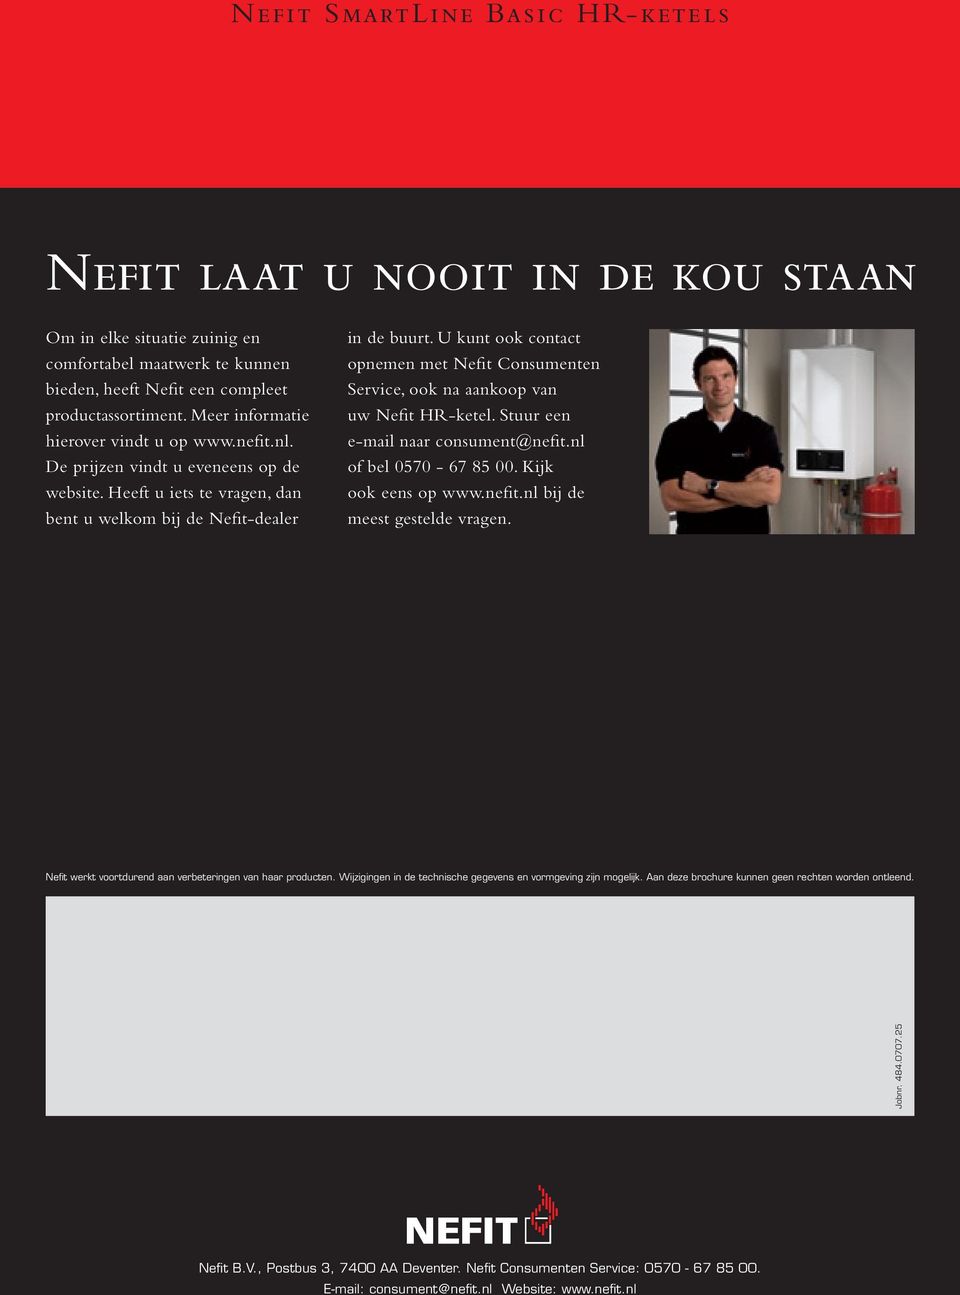 U kunt ook contact opnemen met Nefit Consumenten Service, ook na aankoop van uw Nefit HR-ketel. Stuur een e-mail naar consument@nefit.nl of bel 0570-67 85 00. Kijk ook eens op www.nefit.nl bij de meest gestelde vragen.